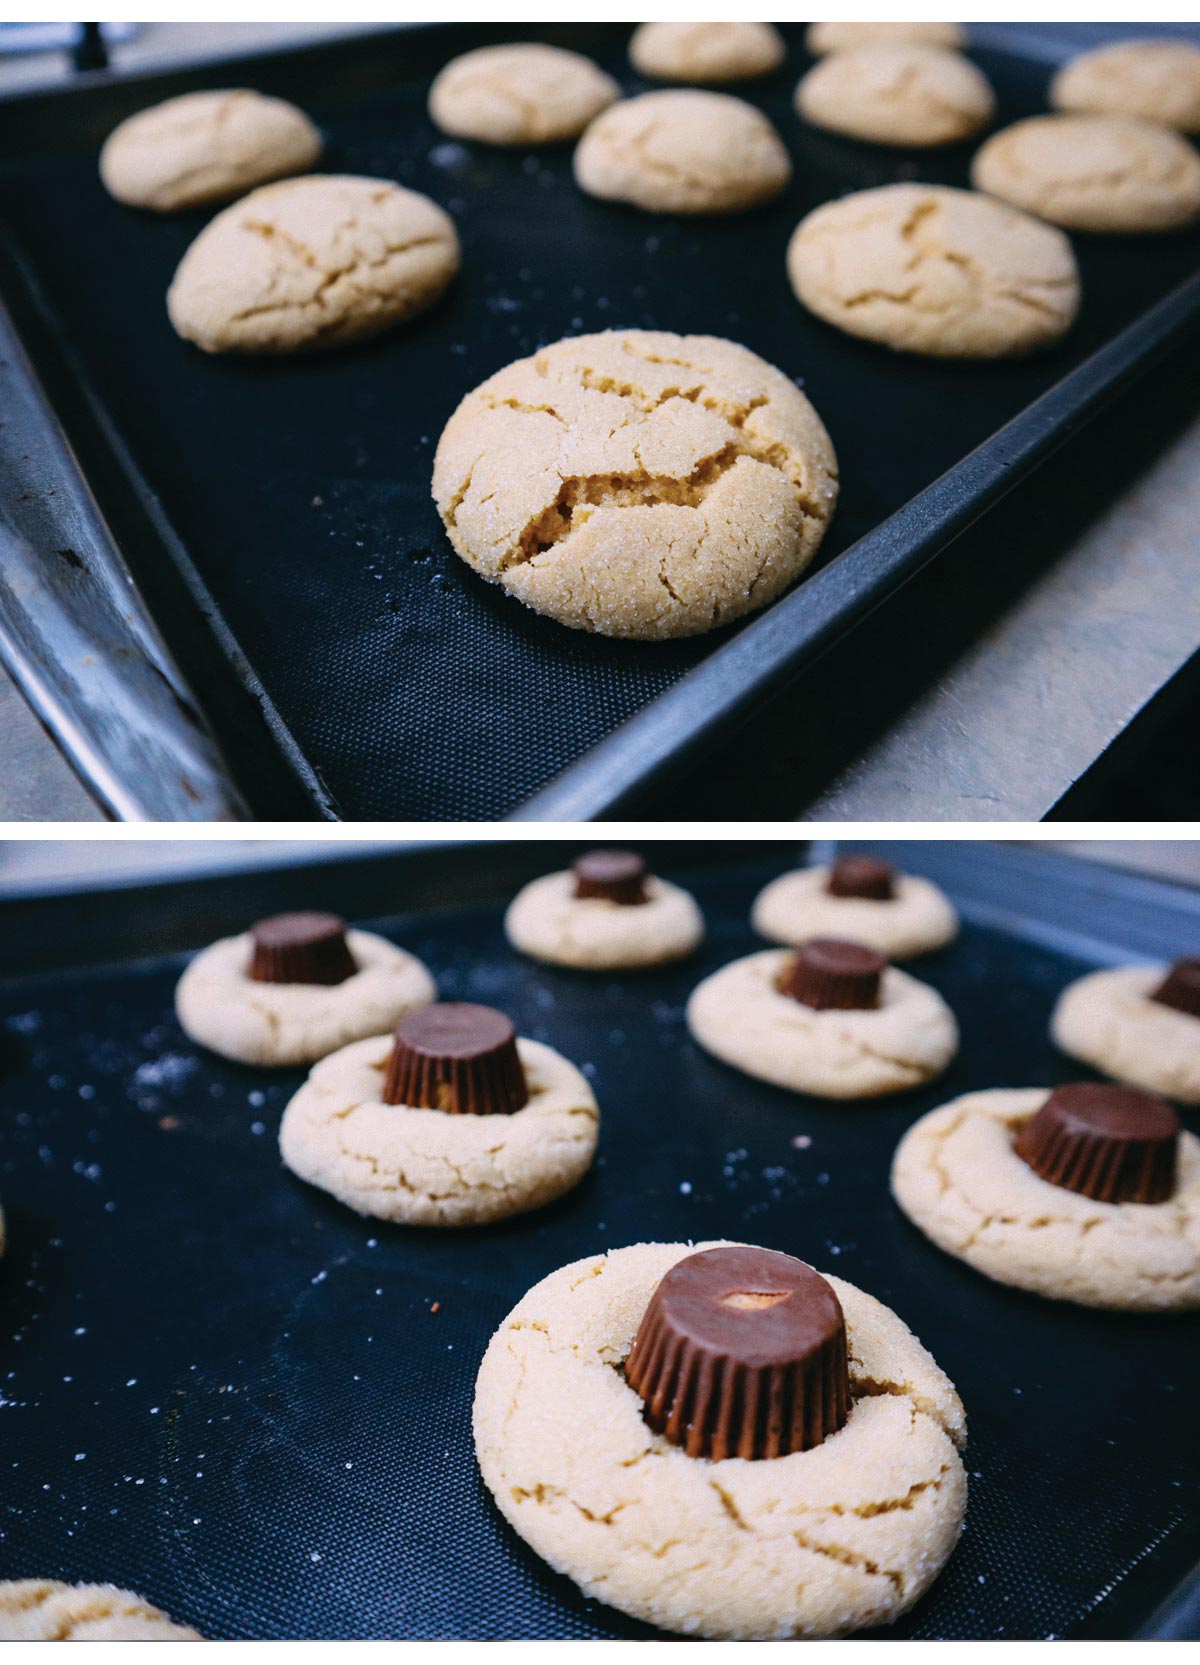 Cottura dei biscotti a base di burro di arachide. Inserimento del cioccolatino al centro del biscotto ancora caldo.